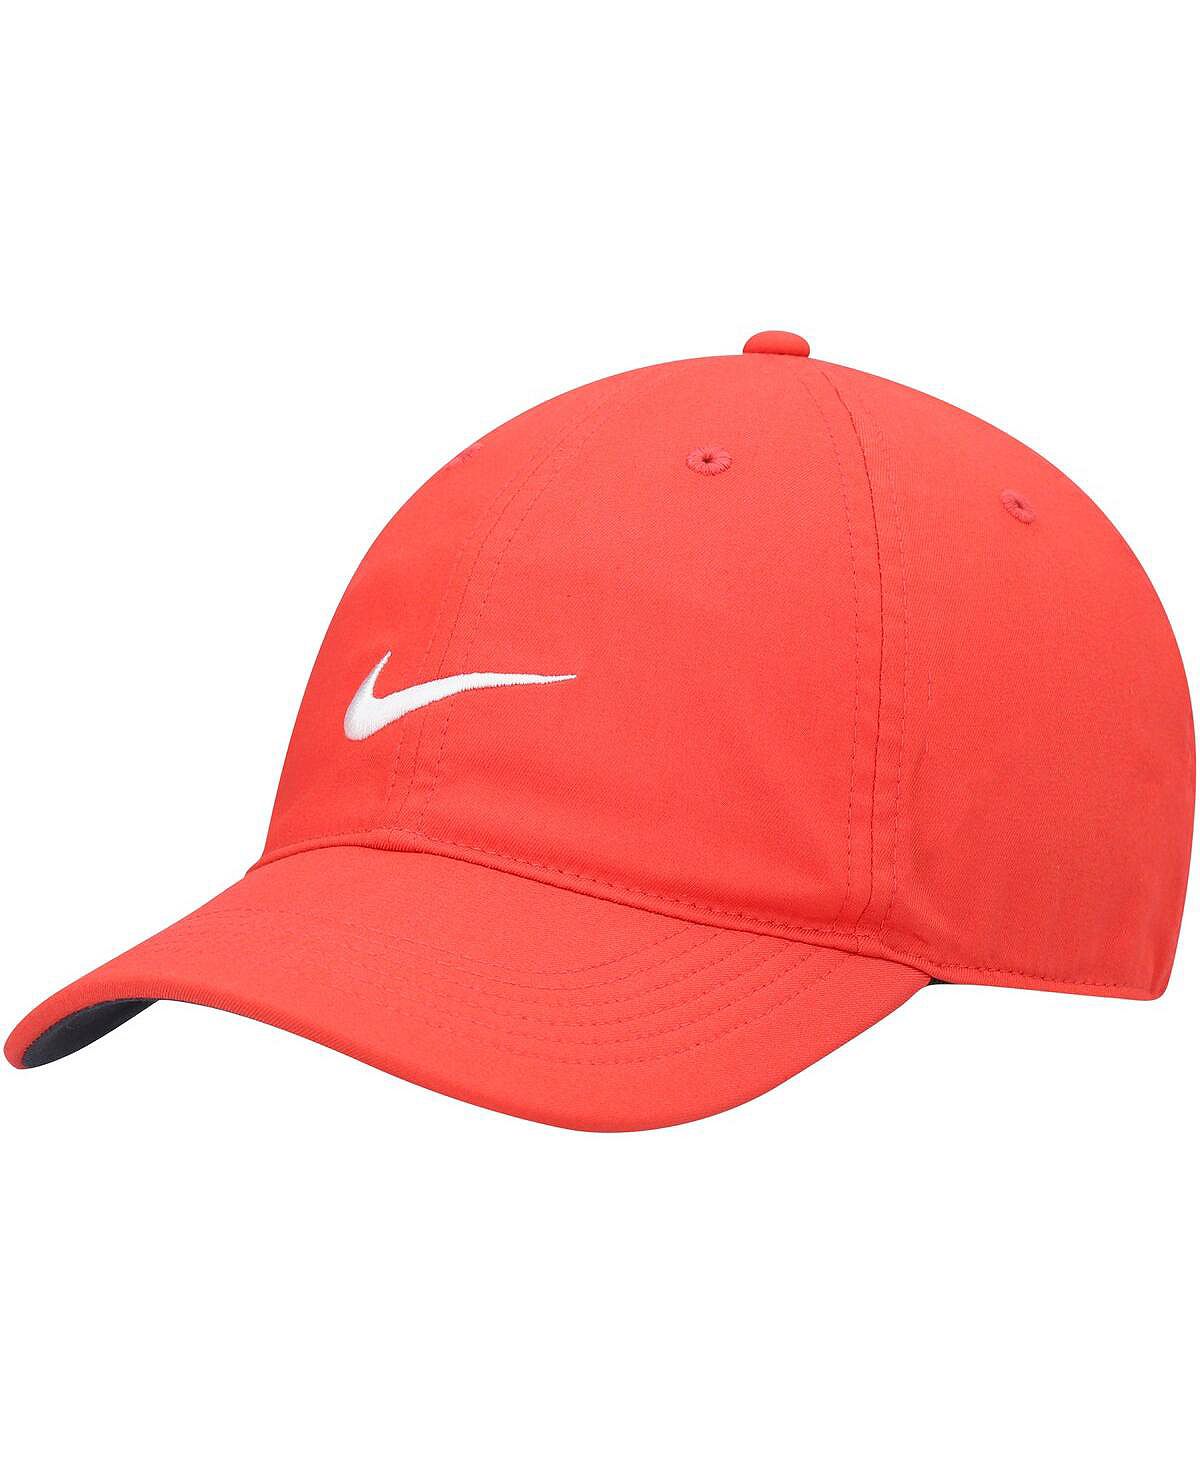 Мужская красная регулируемая шапка Heritage86 Performance Nike noryalli красная мужская шапка noryalli